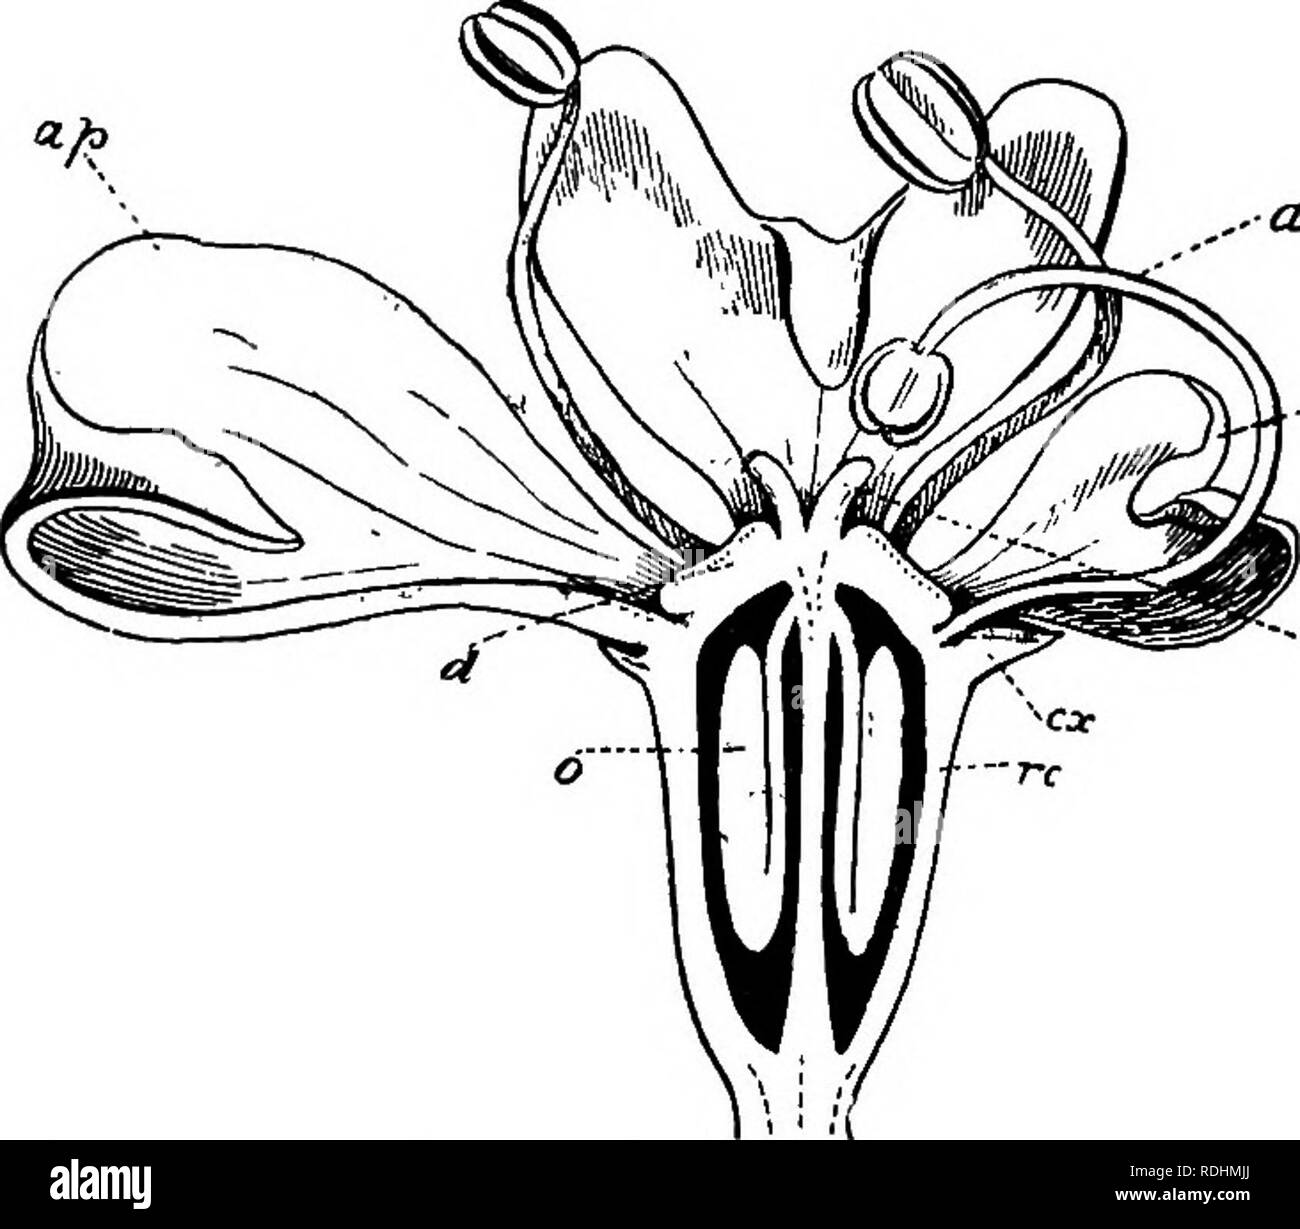 . Botanica elementare . La botanica. POLYPETAL^âUMBELLIFER^ 147 Cow-pastinaca, e ad un grado inferiore di carota, i fiori (fig. 183) in corrispondenza del margine della infiorescenza zygomorphic sono da ..Un. -M -.Sg Fig. 183.âVertical sezione di un marginale zygomorphic fiore di Herachum sphondylium, motivo della speciale allargamento dei petali anteriore (AP), che sono rivolte verso l'esterno. Sepali (ex) cinque o nessuno; quando è presente il calice è piccolo e non è ri- /Â Â" presentata da cinque denti; in alcuni ombrella- liferae il calice è assente. Petali {ap, pp), cinque distinti, spesso piegato verso l'interno in corrispondenza delle loro estremità. Stame Foto Stock